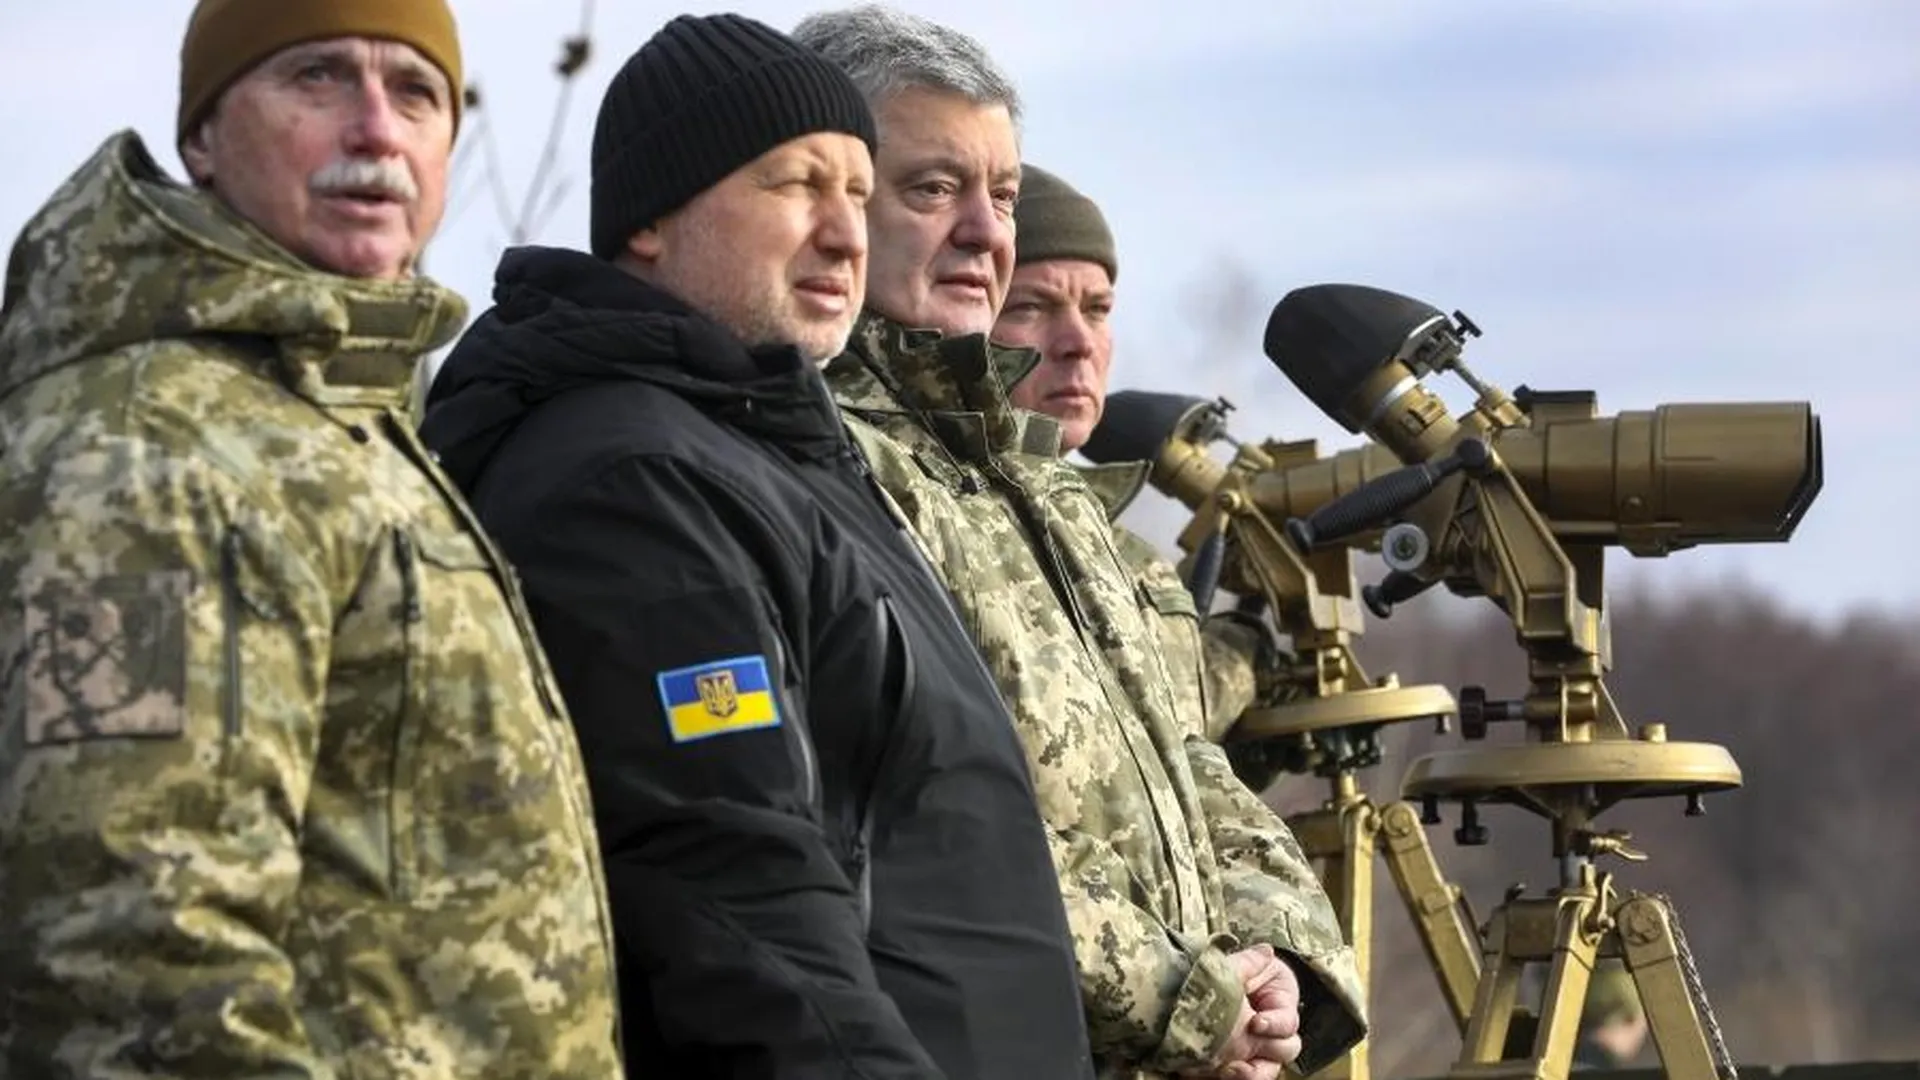 МВД РФ объявило в розыск ректора Нацуниверситета обороны Украины Коваля